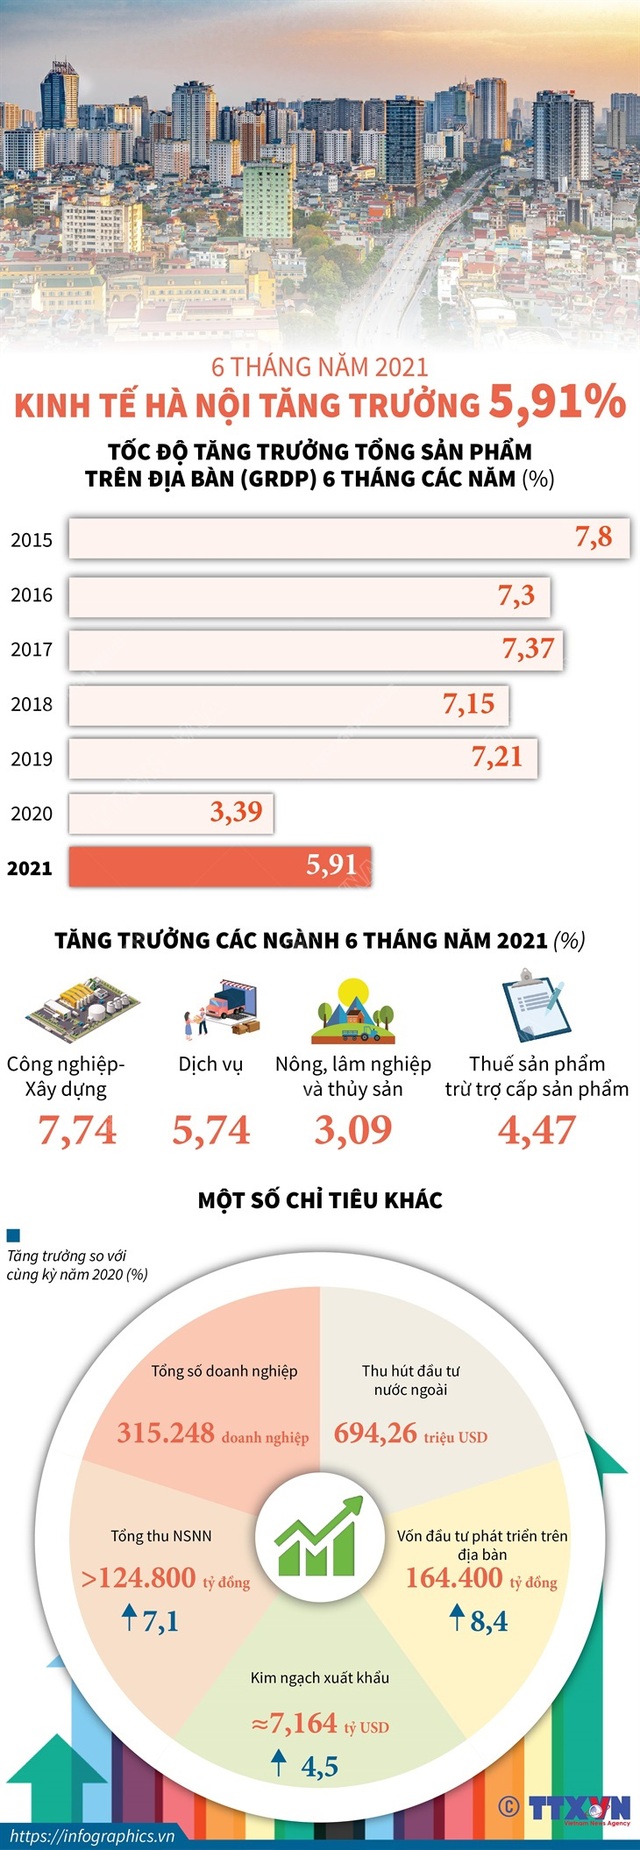 [INFOGRAPHIC] 6 tháng năm 2021: Kinh tế Hà Nội tăng trưởng 5,91% - Ảnh 1.